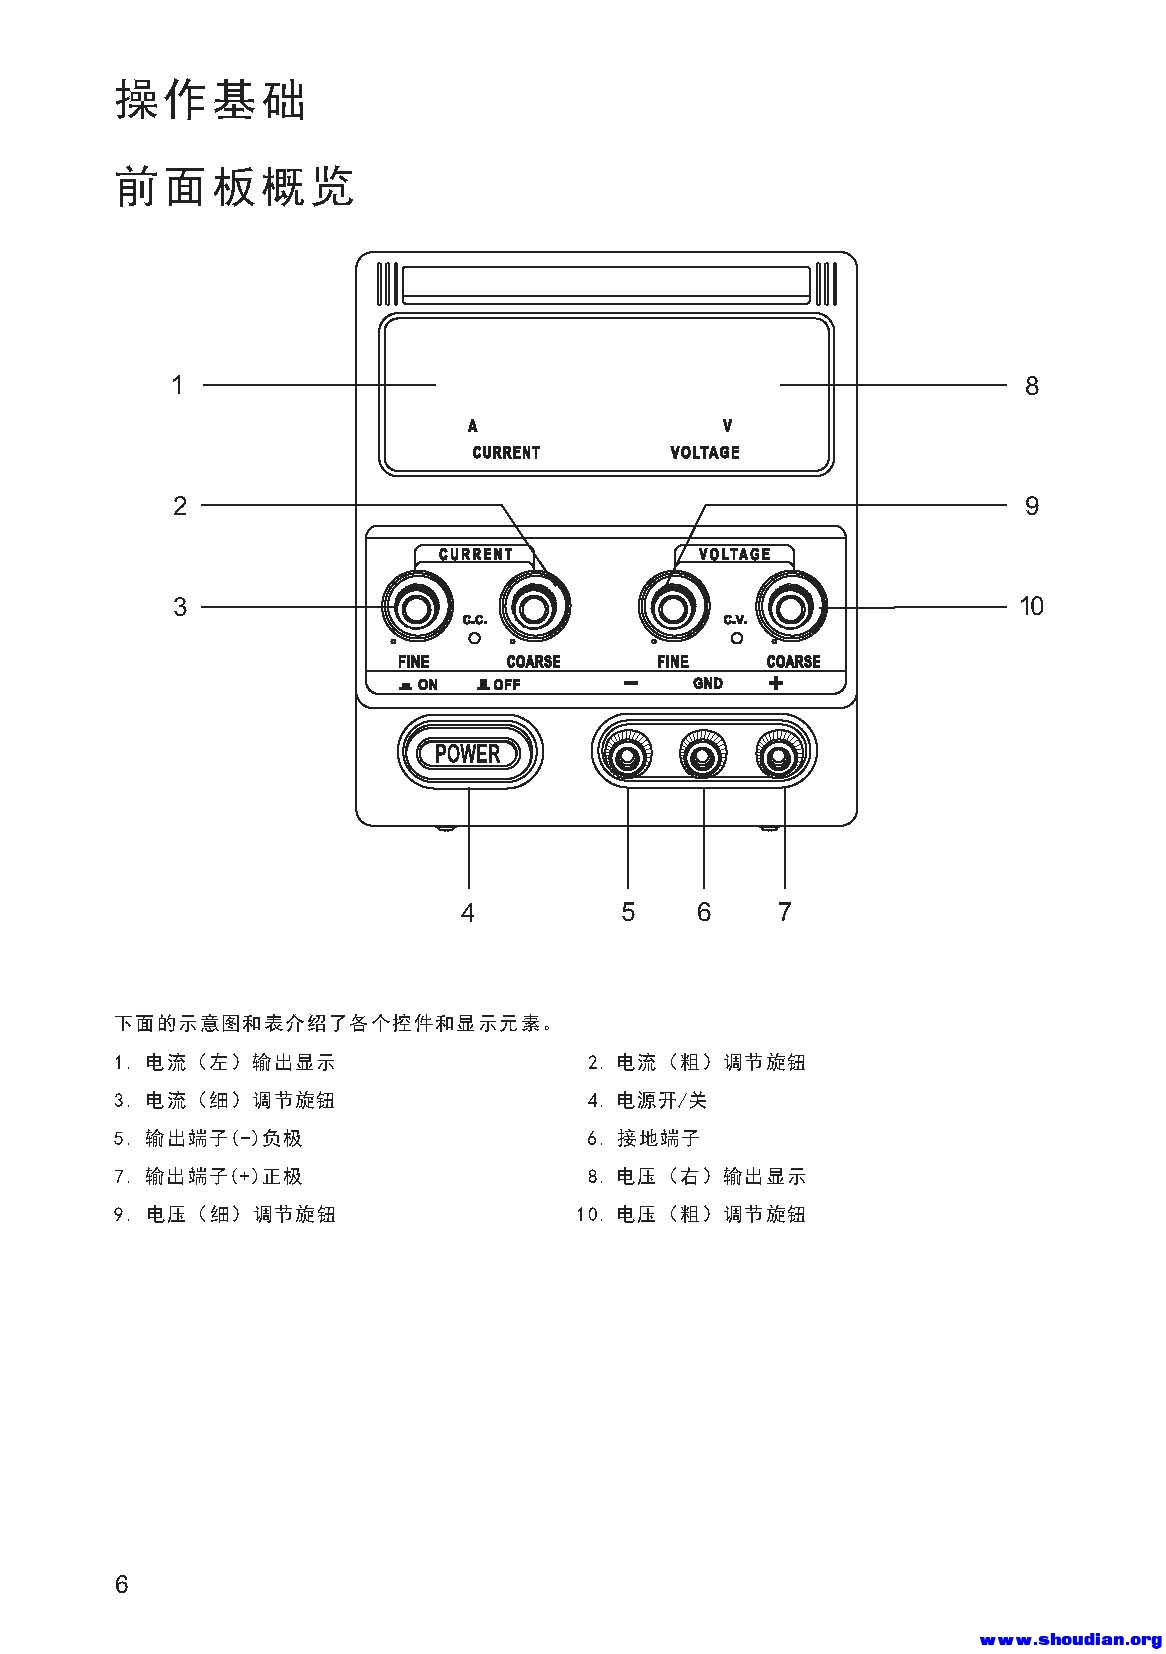 KXN系列 B机型 中文说明书_页面_08.jpg